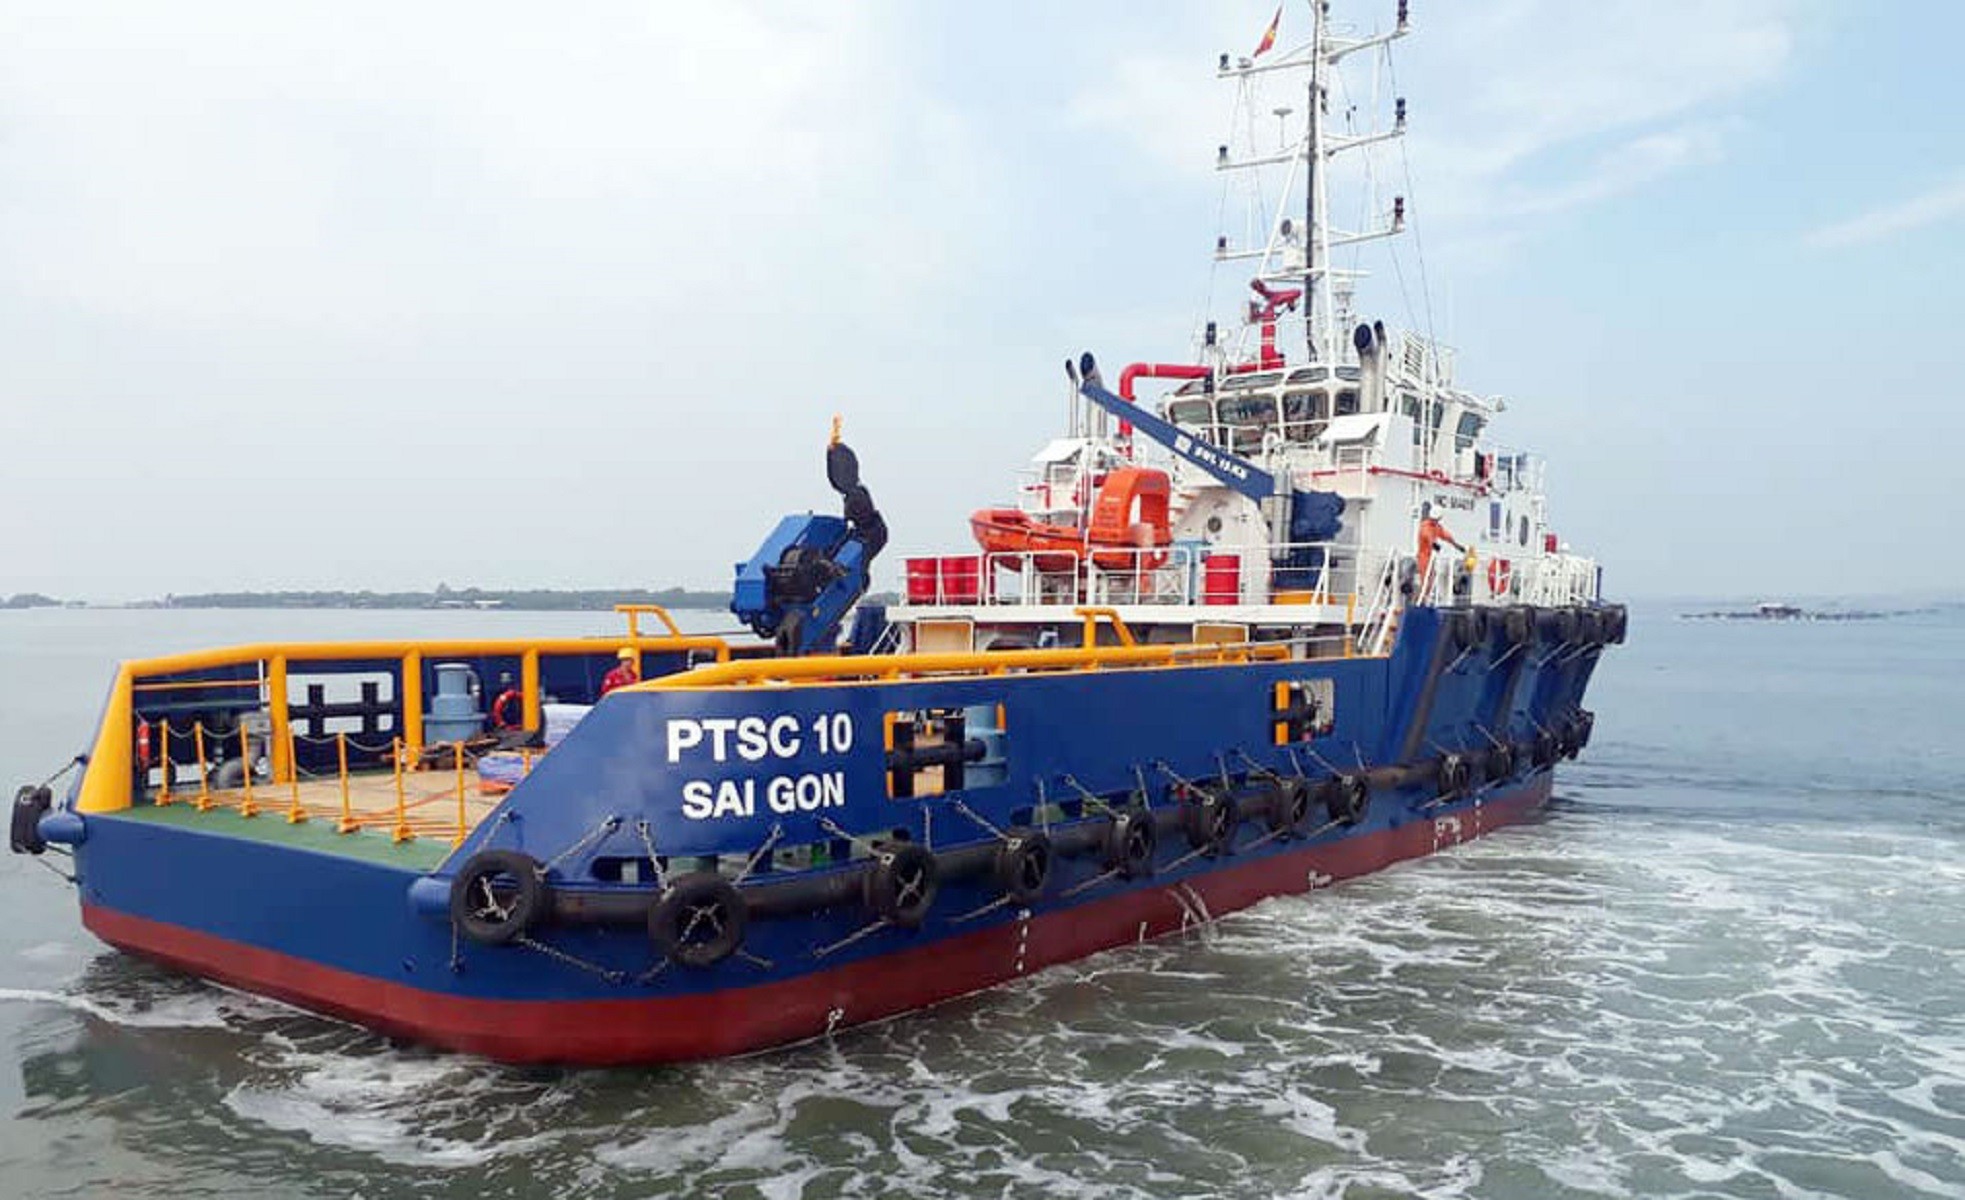 

PTSC tên đầy đủ là Tổng công ty Cổ phần Dịch vụ Kỹ thuật Dầu khí Việt Nam và là thành viên của Tập đoàn Dầu khí Quốc gia Việt Nam (PetroVietnam - PVN)
